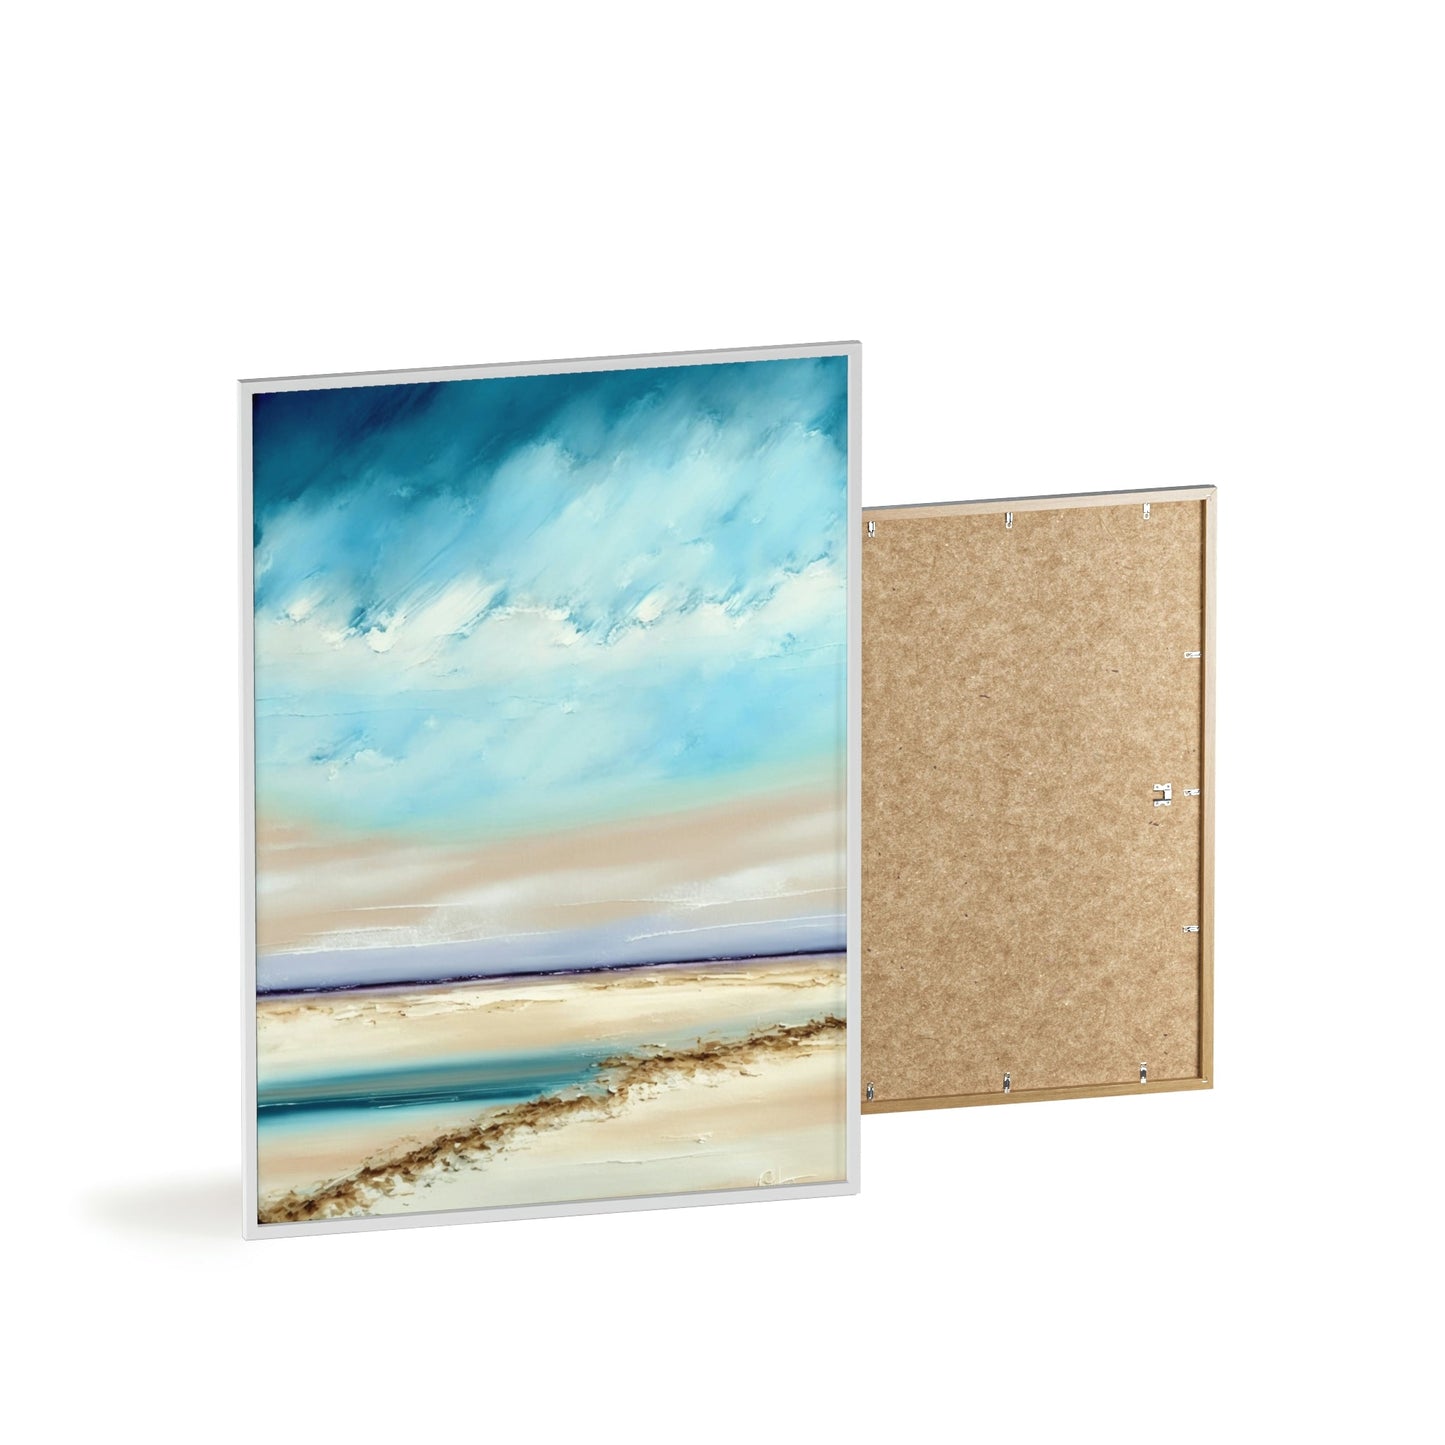 Natural Canvas Print & Poster of Abstract Seascapes: Coastal Wall Art